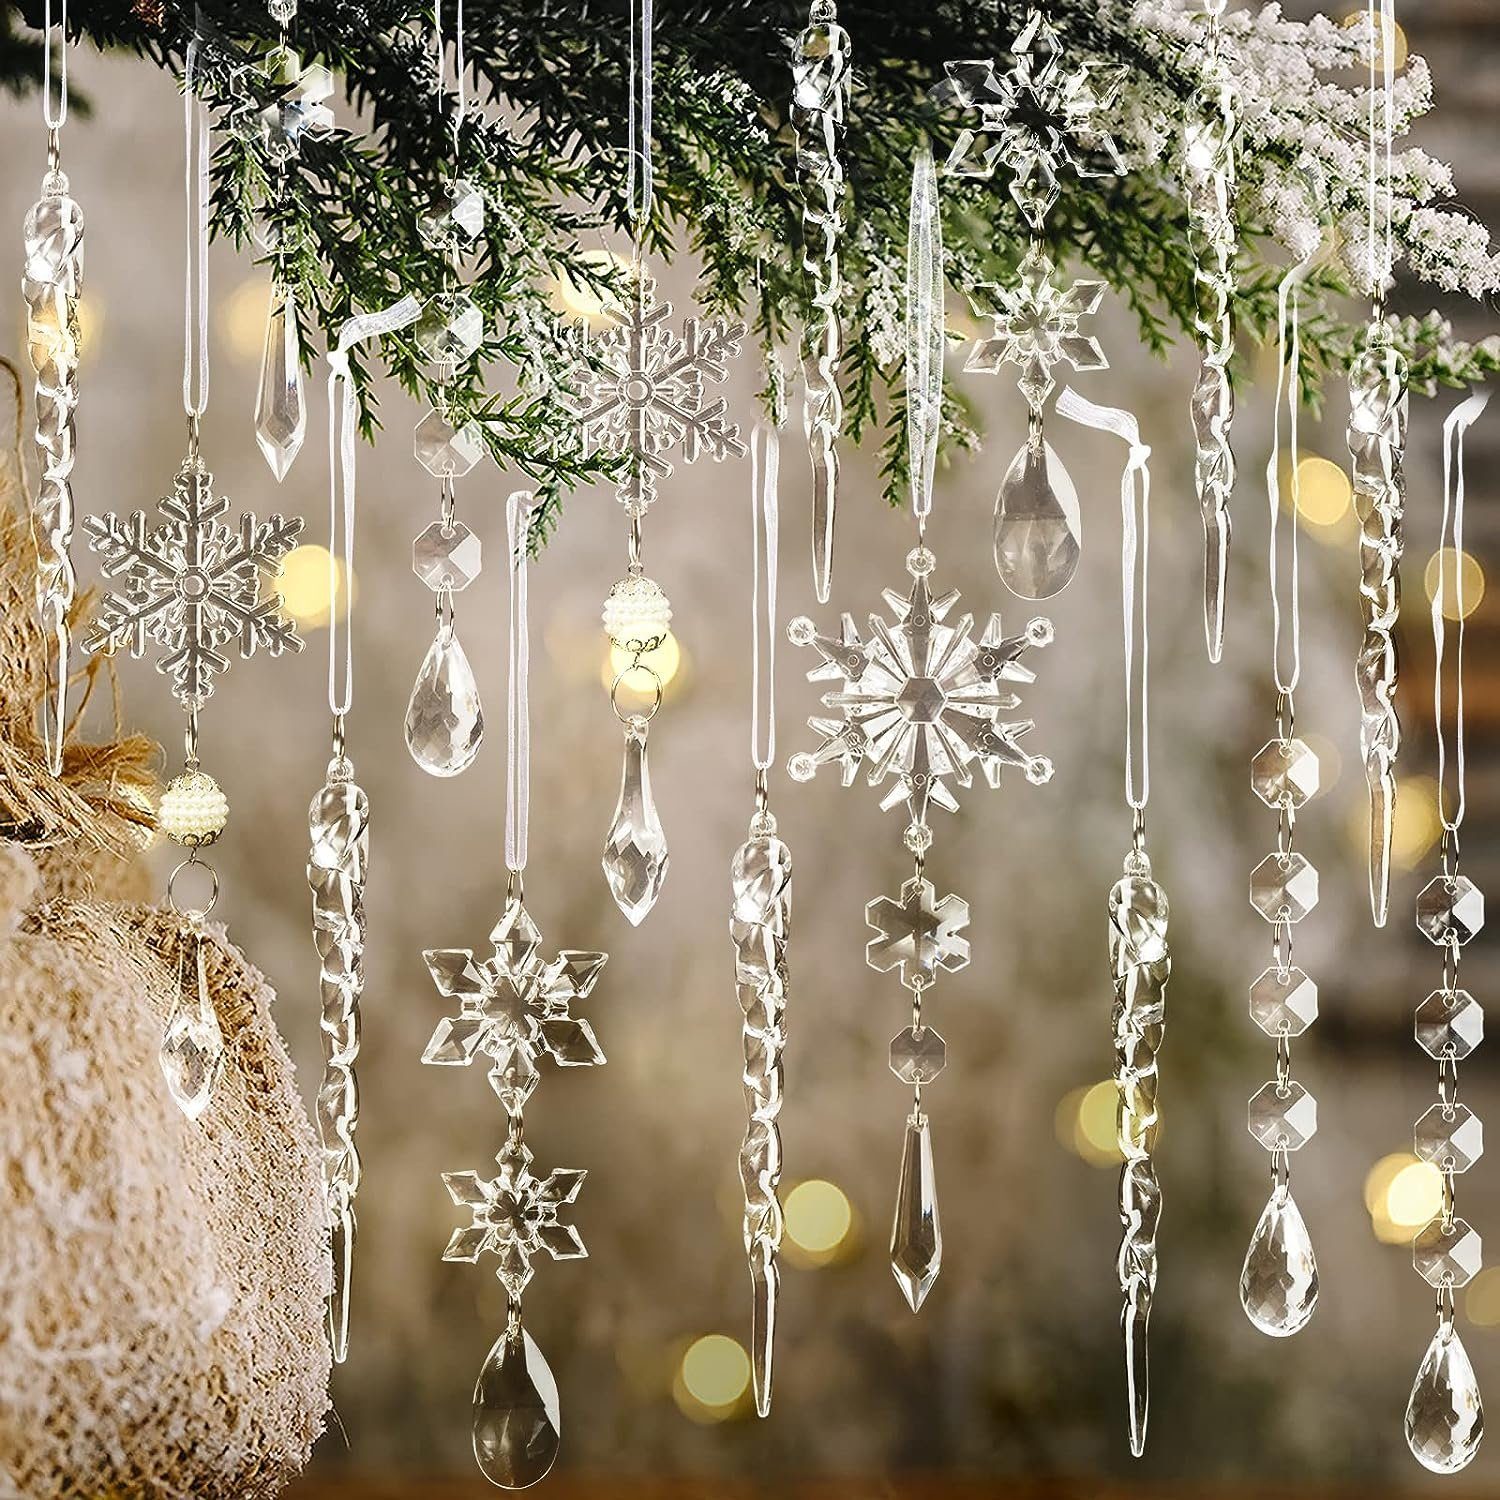 Lamon Christbaumschmuck 10 Stück hängende Kristallornamente, Tropfen Eiszapfen transparent Weihnachtsschneeflocken Weihnachtsbaumschmuck